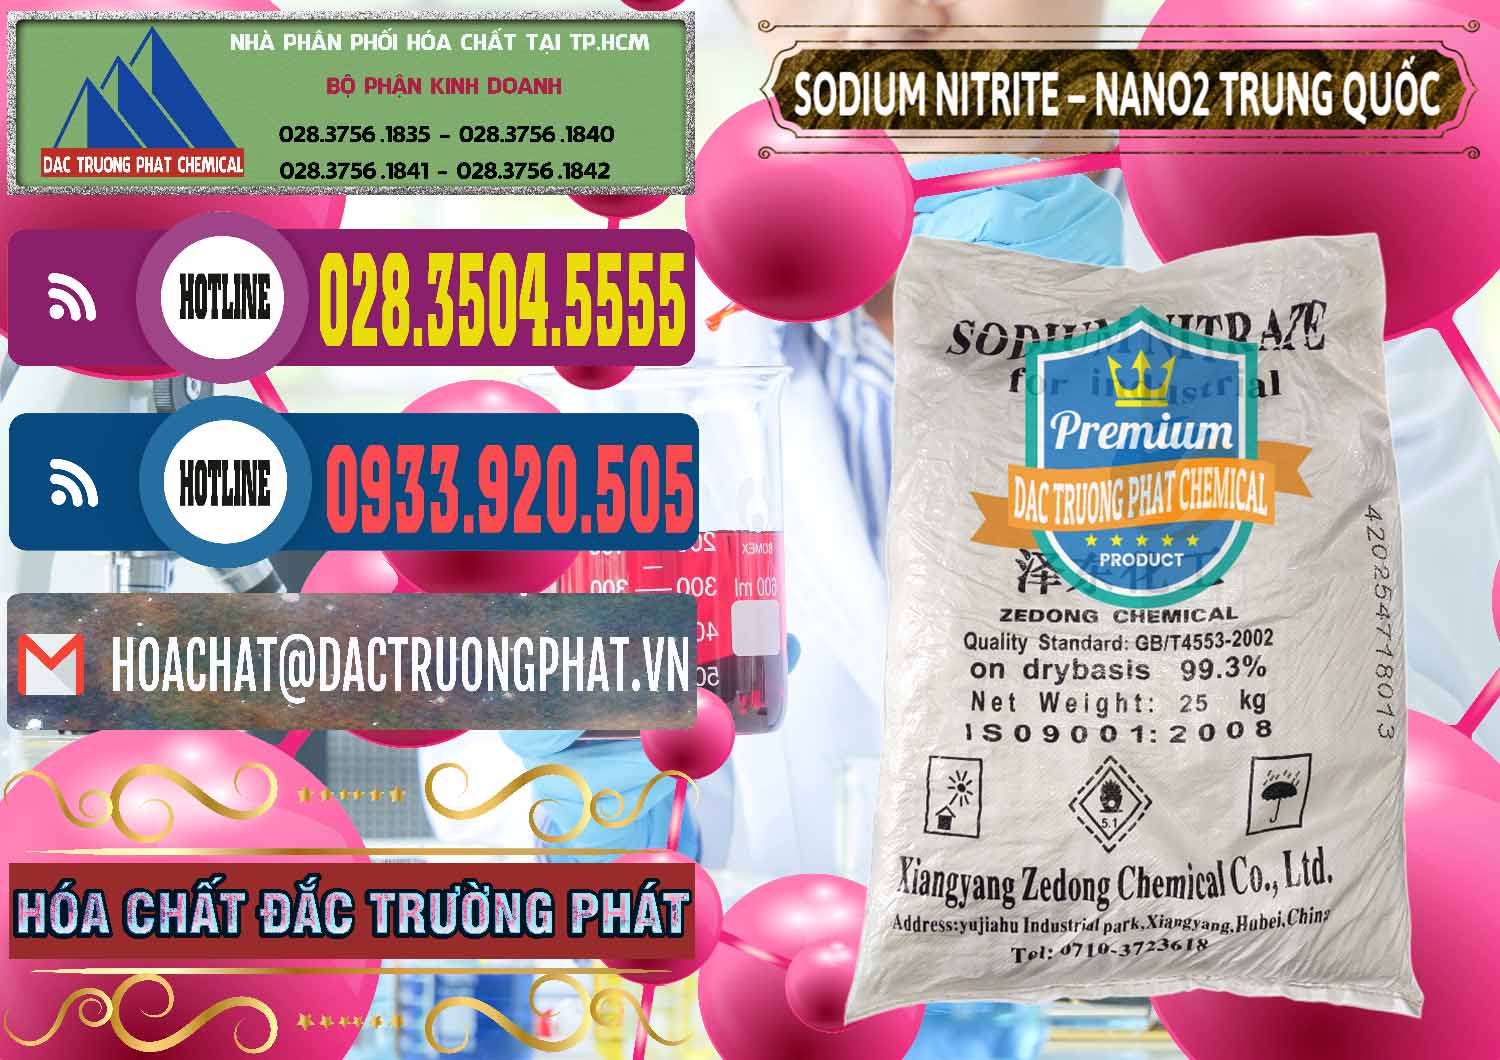 Cty chuyên nhập khẩu - bán Sodium Nitrite - NANO2 Zedong Trung Quốc China - 0149 - Đơn vị chuyên kinh doanh _ phân phối hóa chất tại TP.HCM - muabanhoachat.com.vn